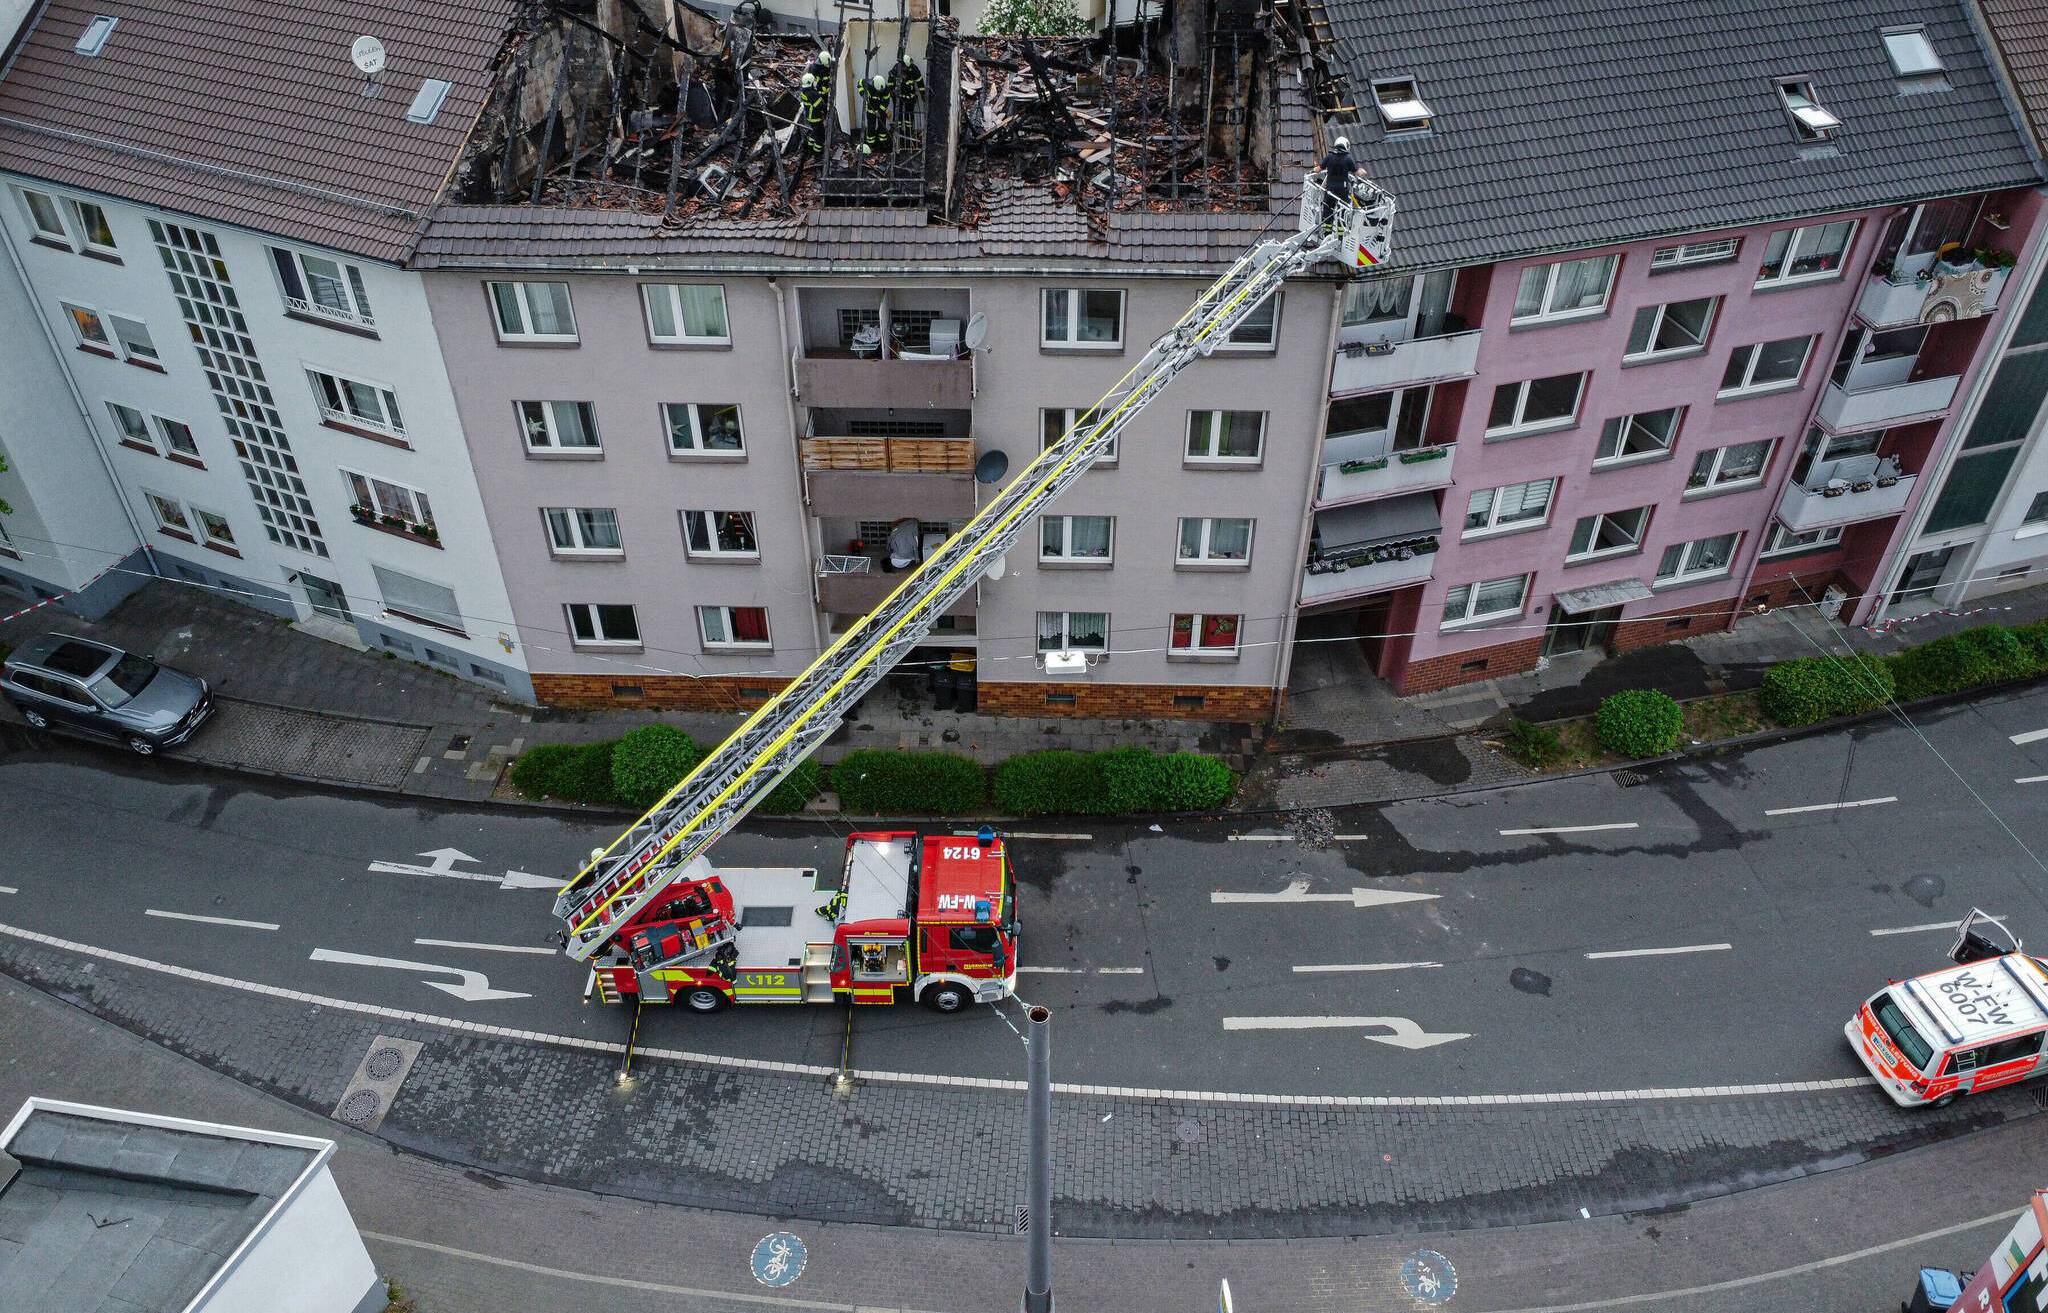 Dachstuhl in Wuppertal-Heckinghausen nach Brand komplett verschwunden